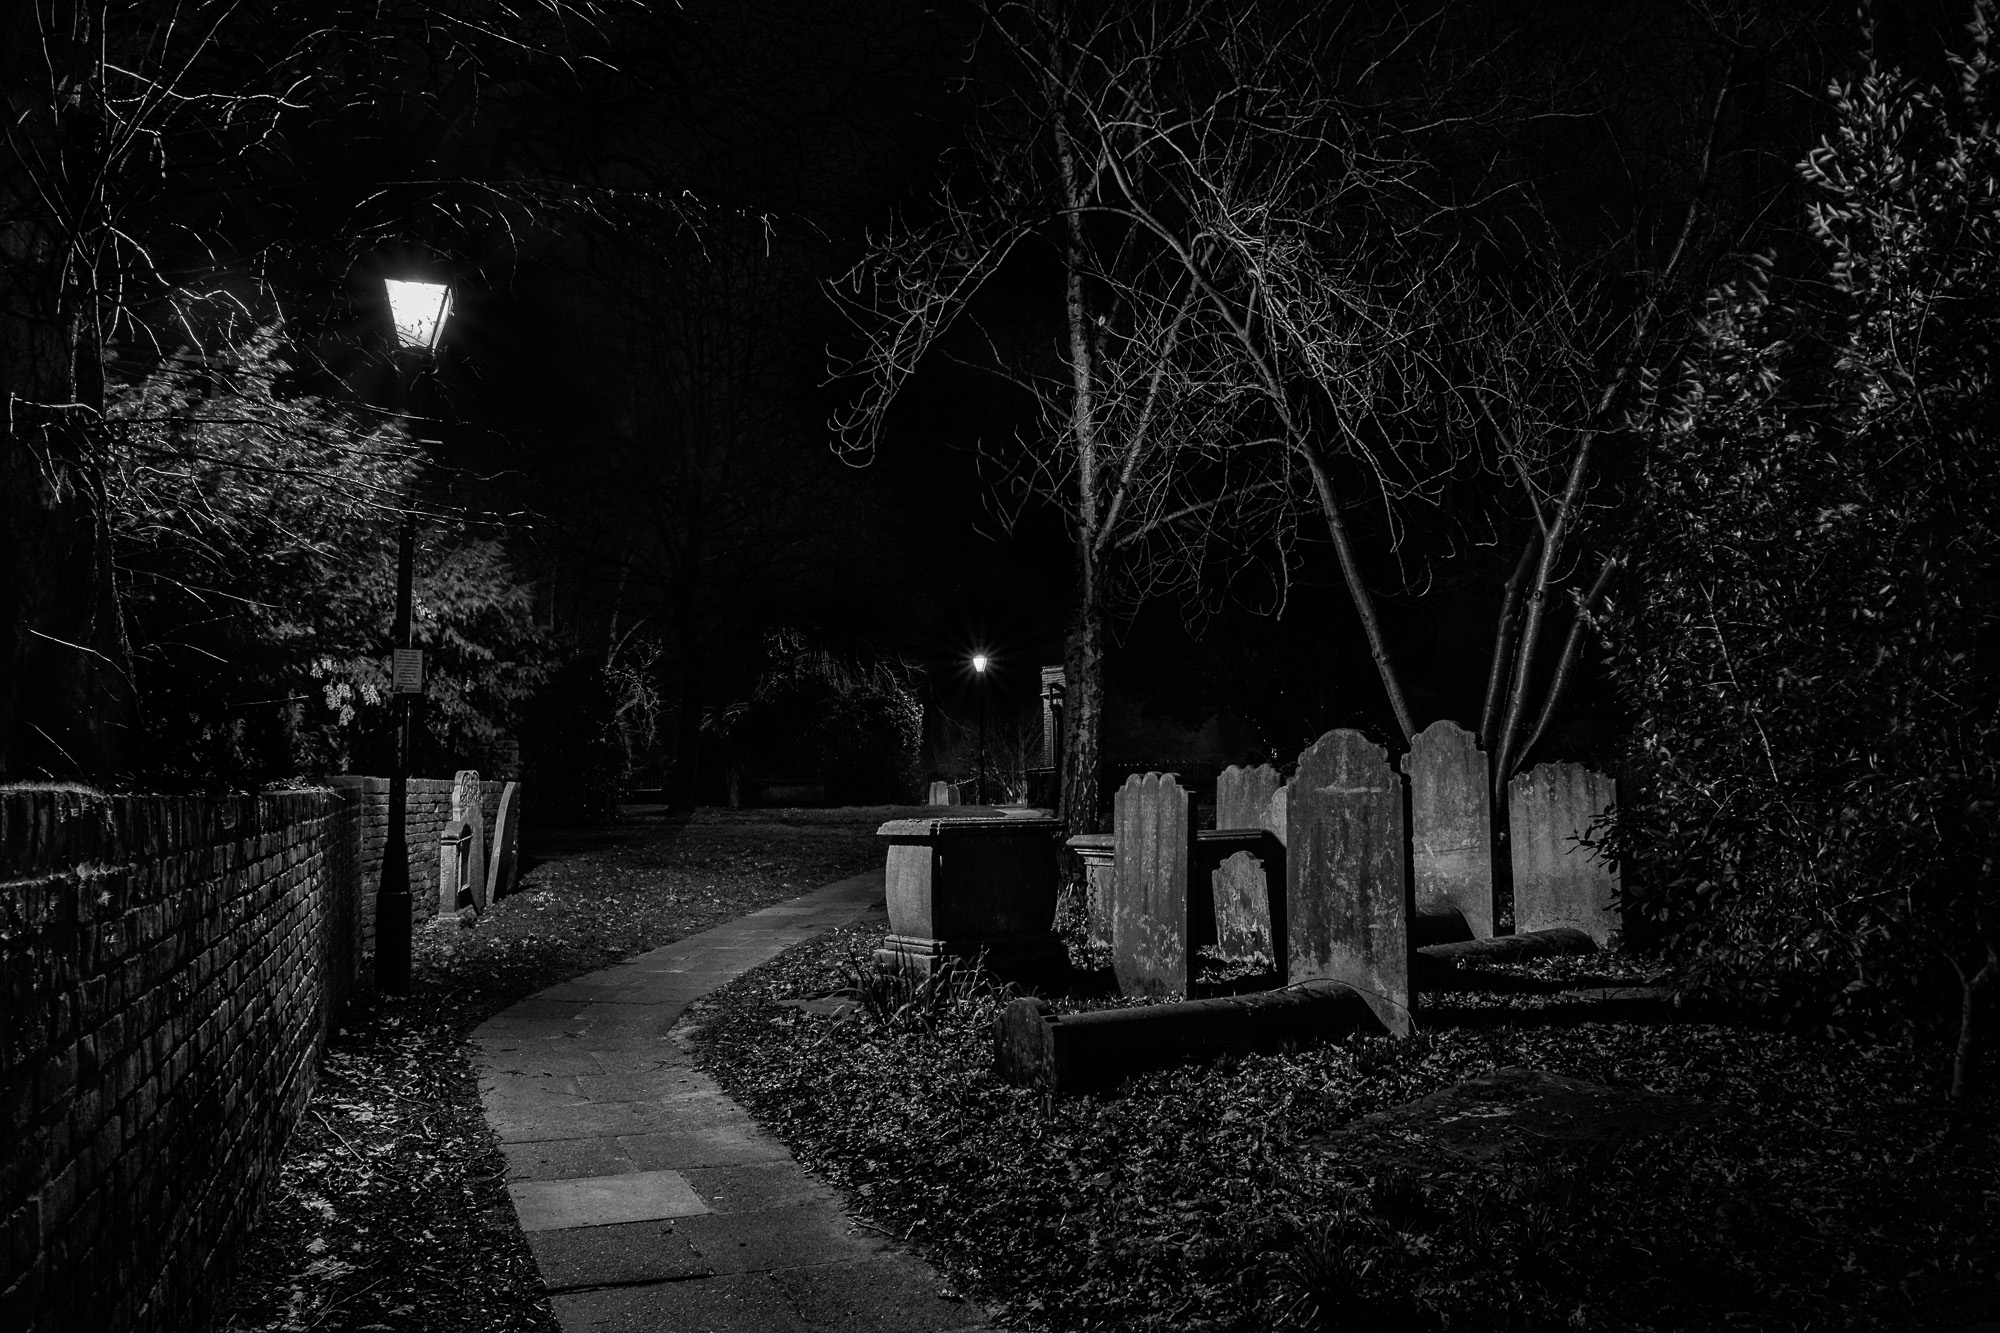 In The Night Churchyard